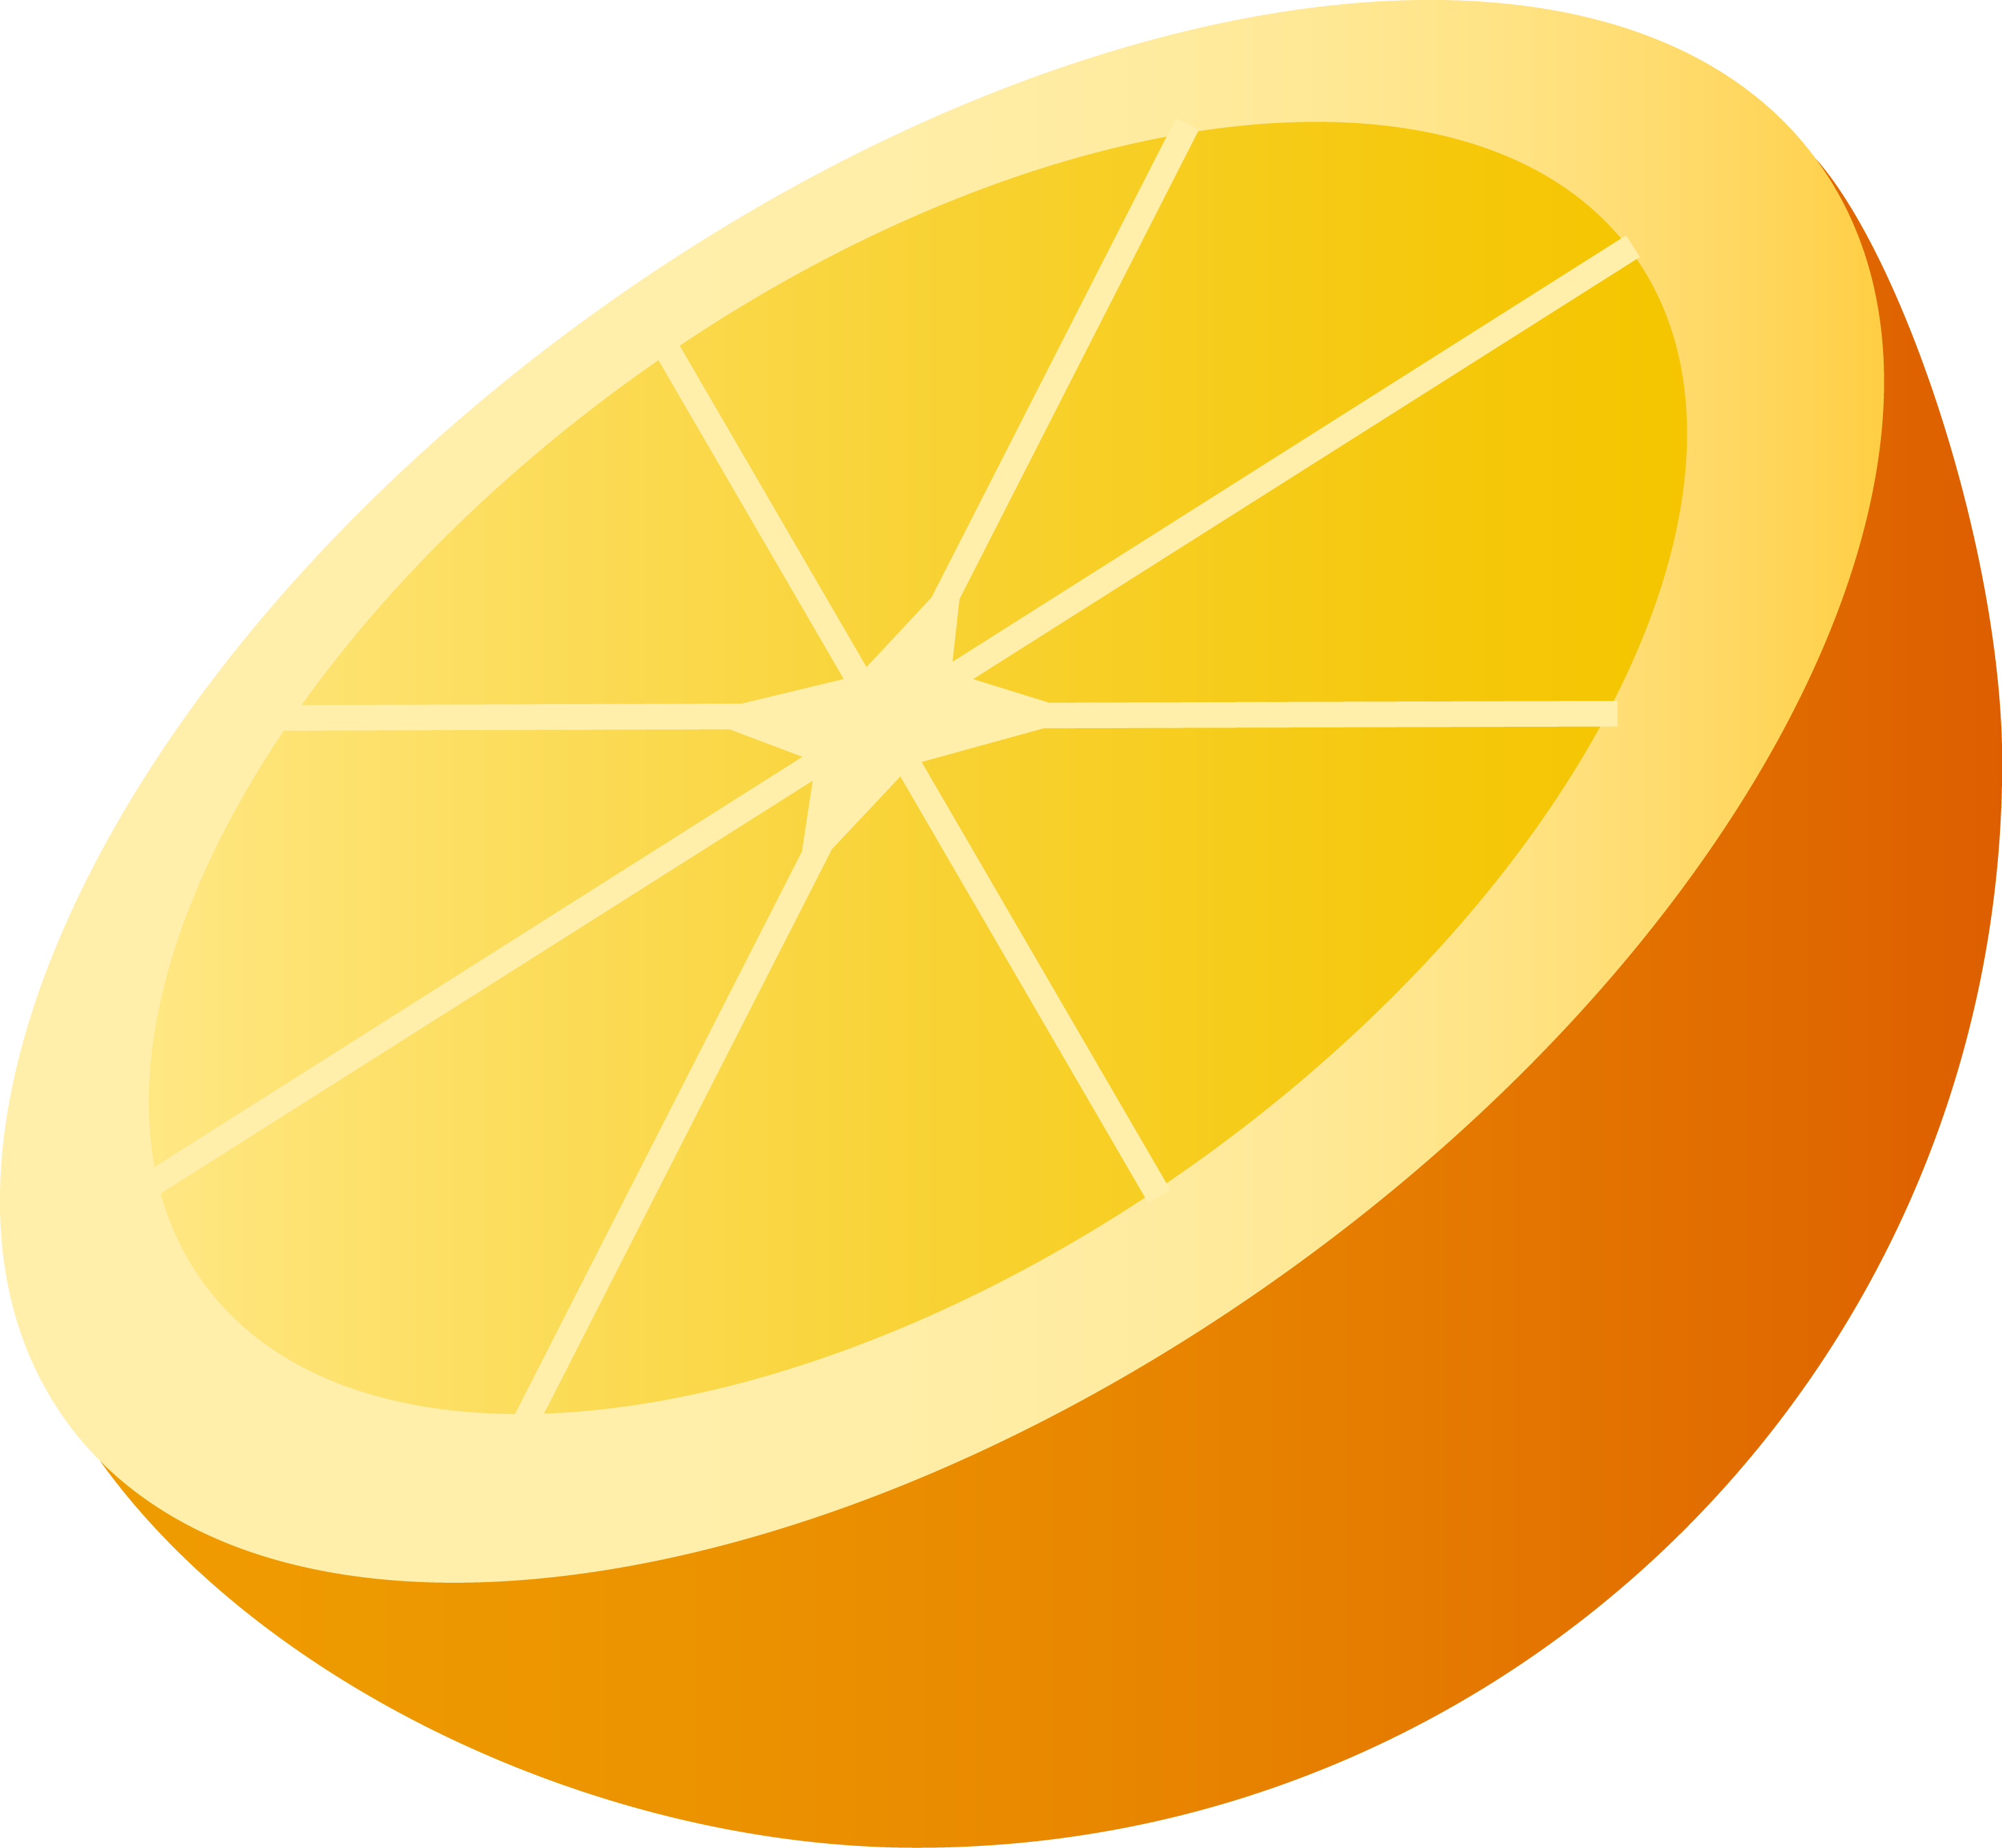 一半橙子